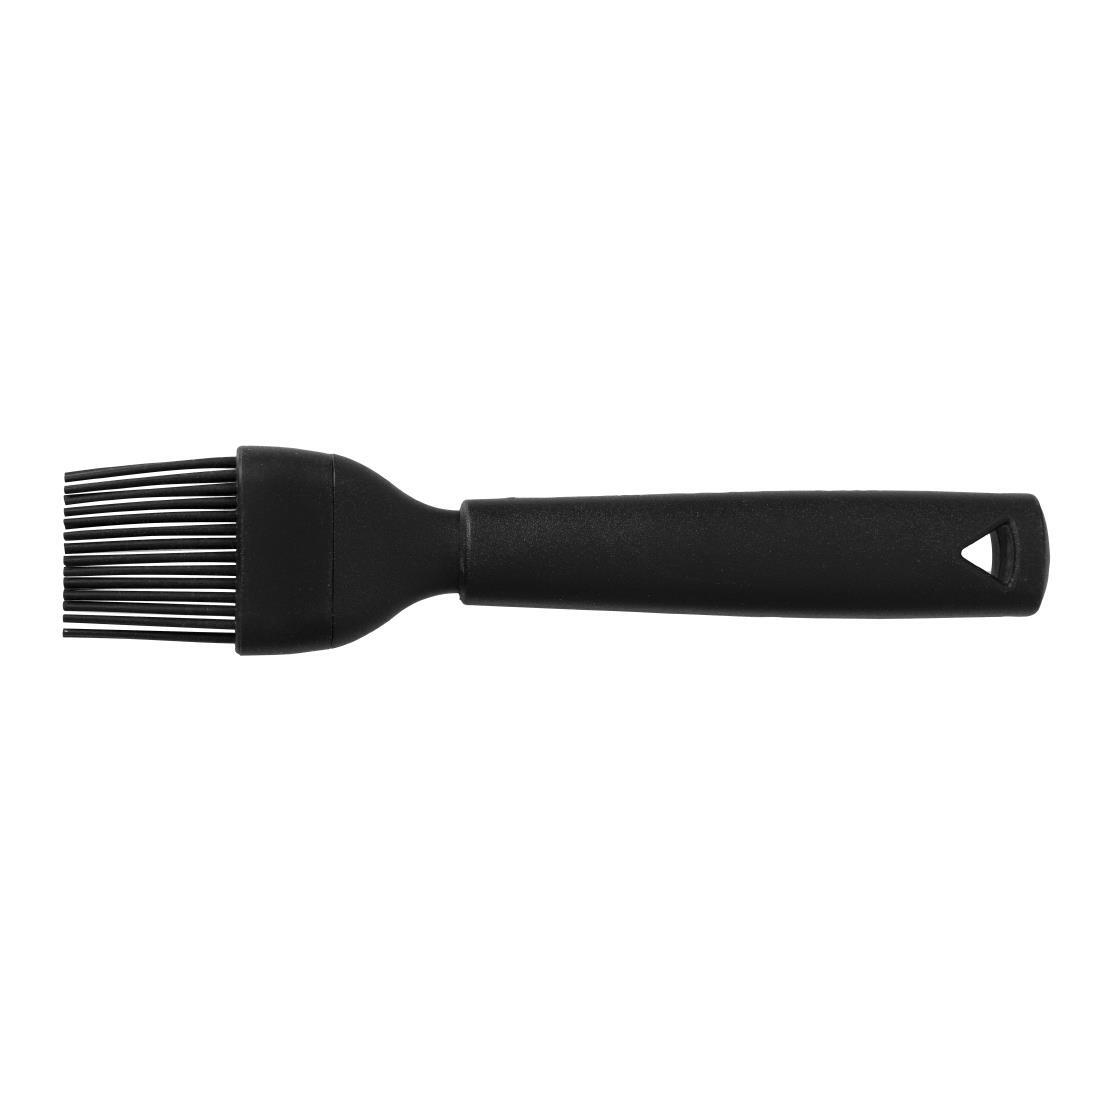 Matfer 113041 Silicone Cooking Brush, Black